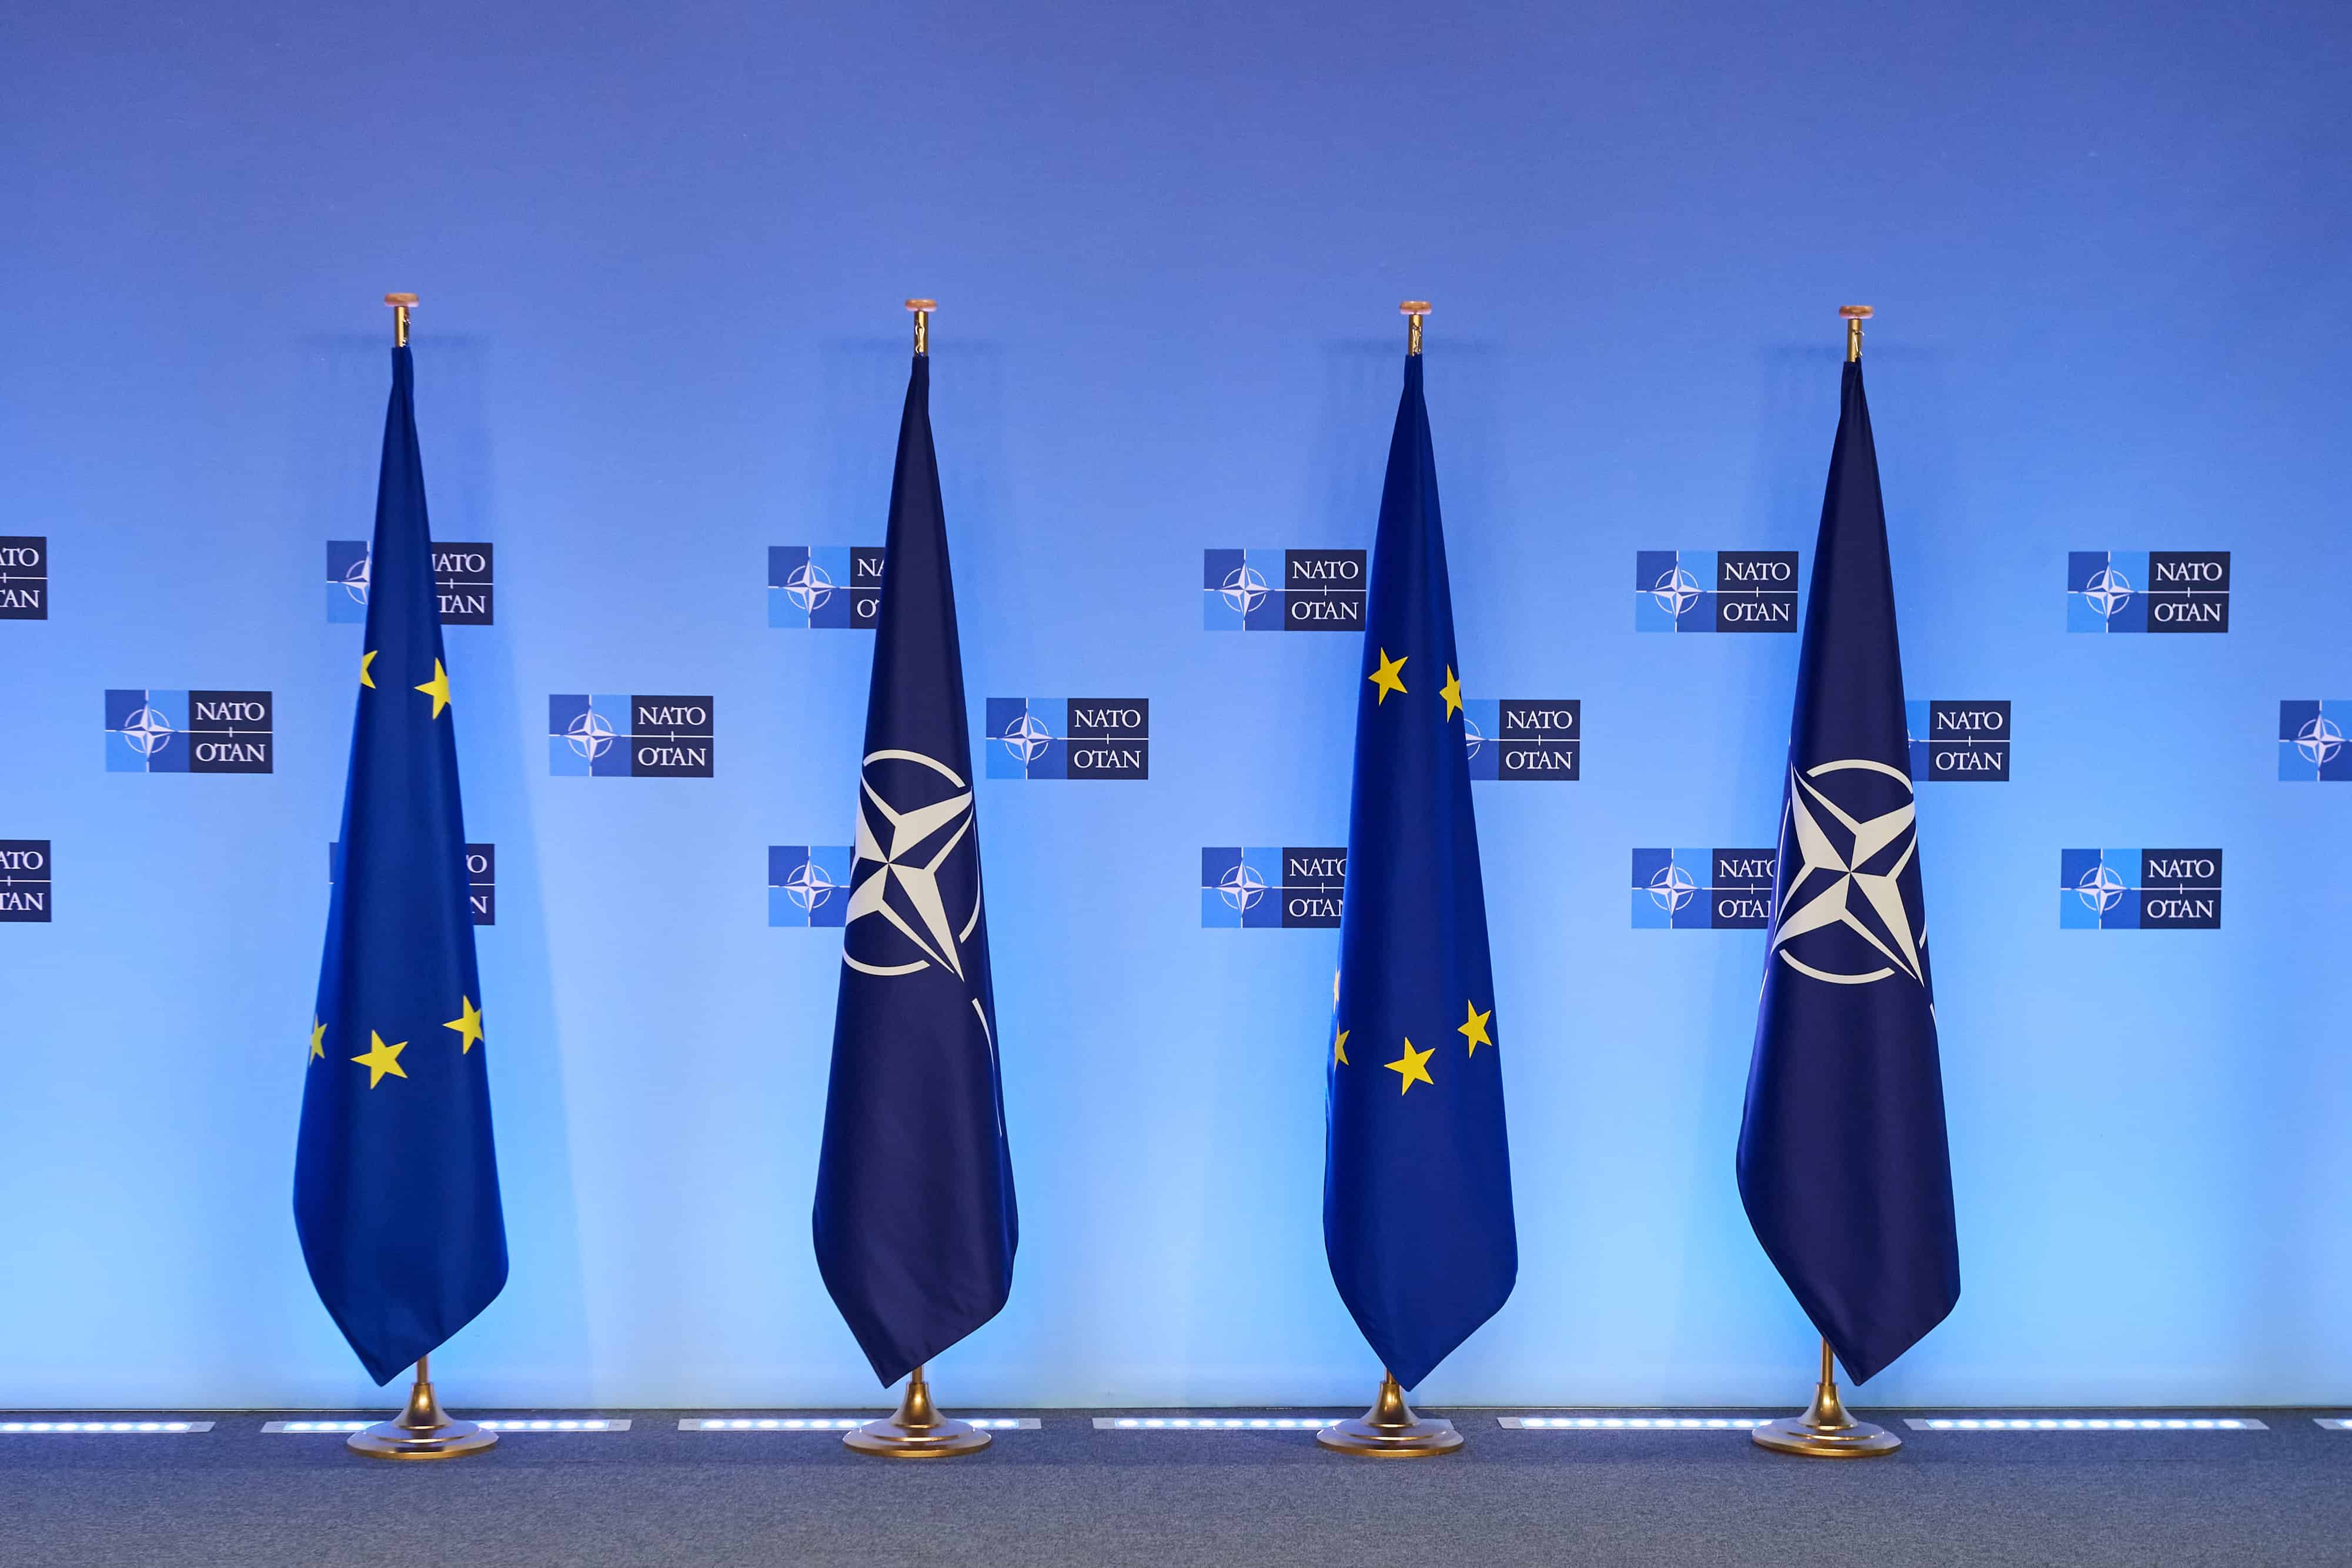 Přečtete si více ze článku Vstup Finska a Švédska do NATO: Kdy k němu dojde a co bude znamenat?